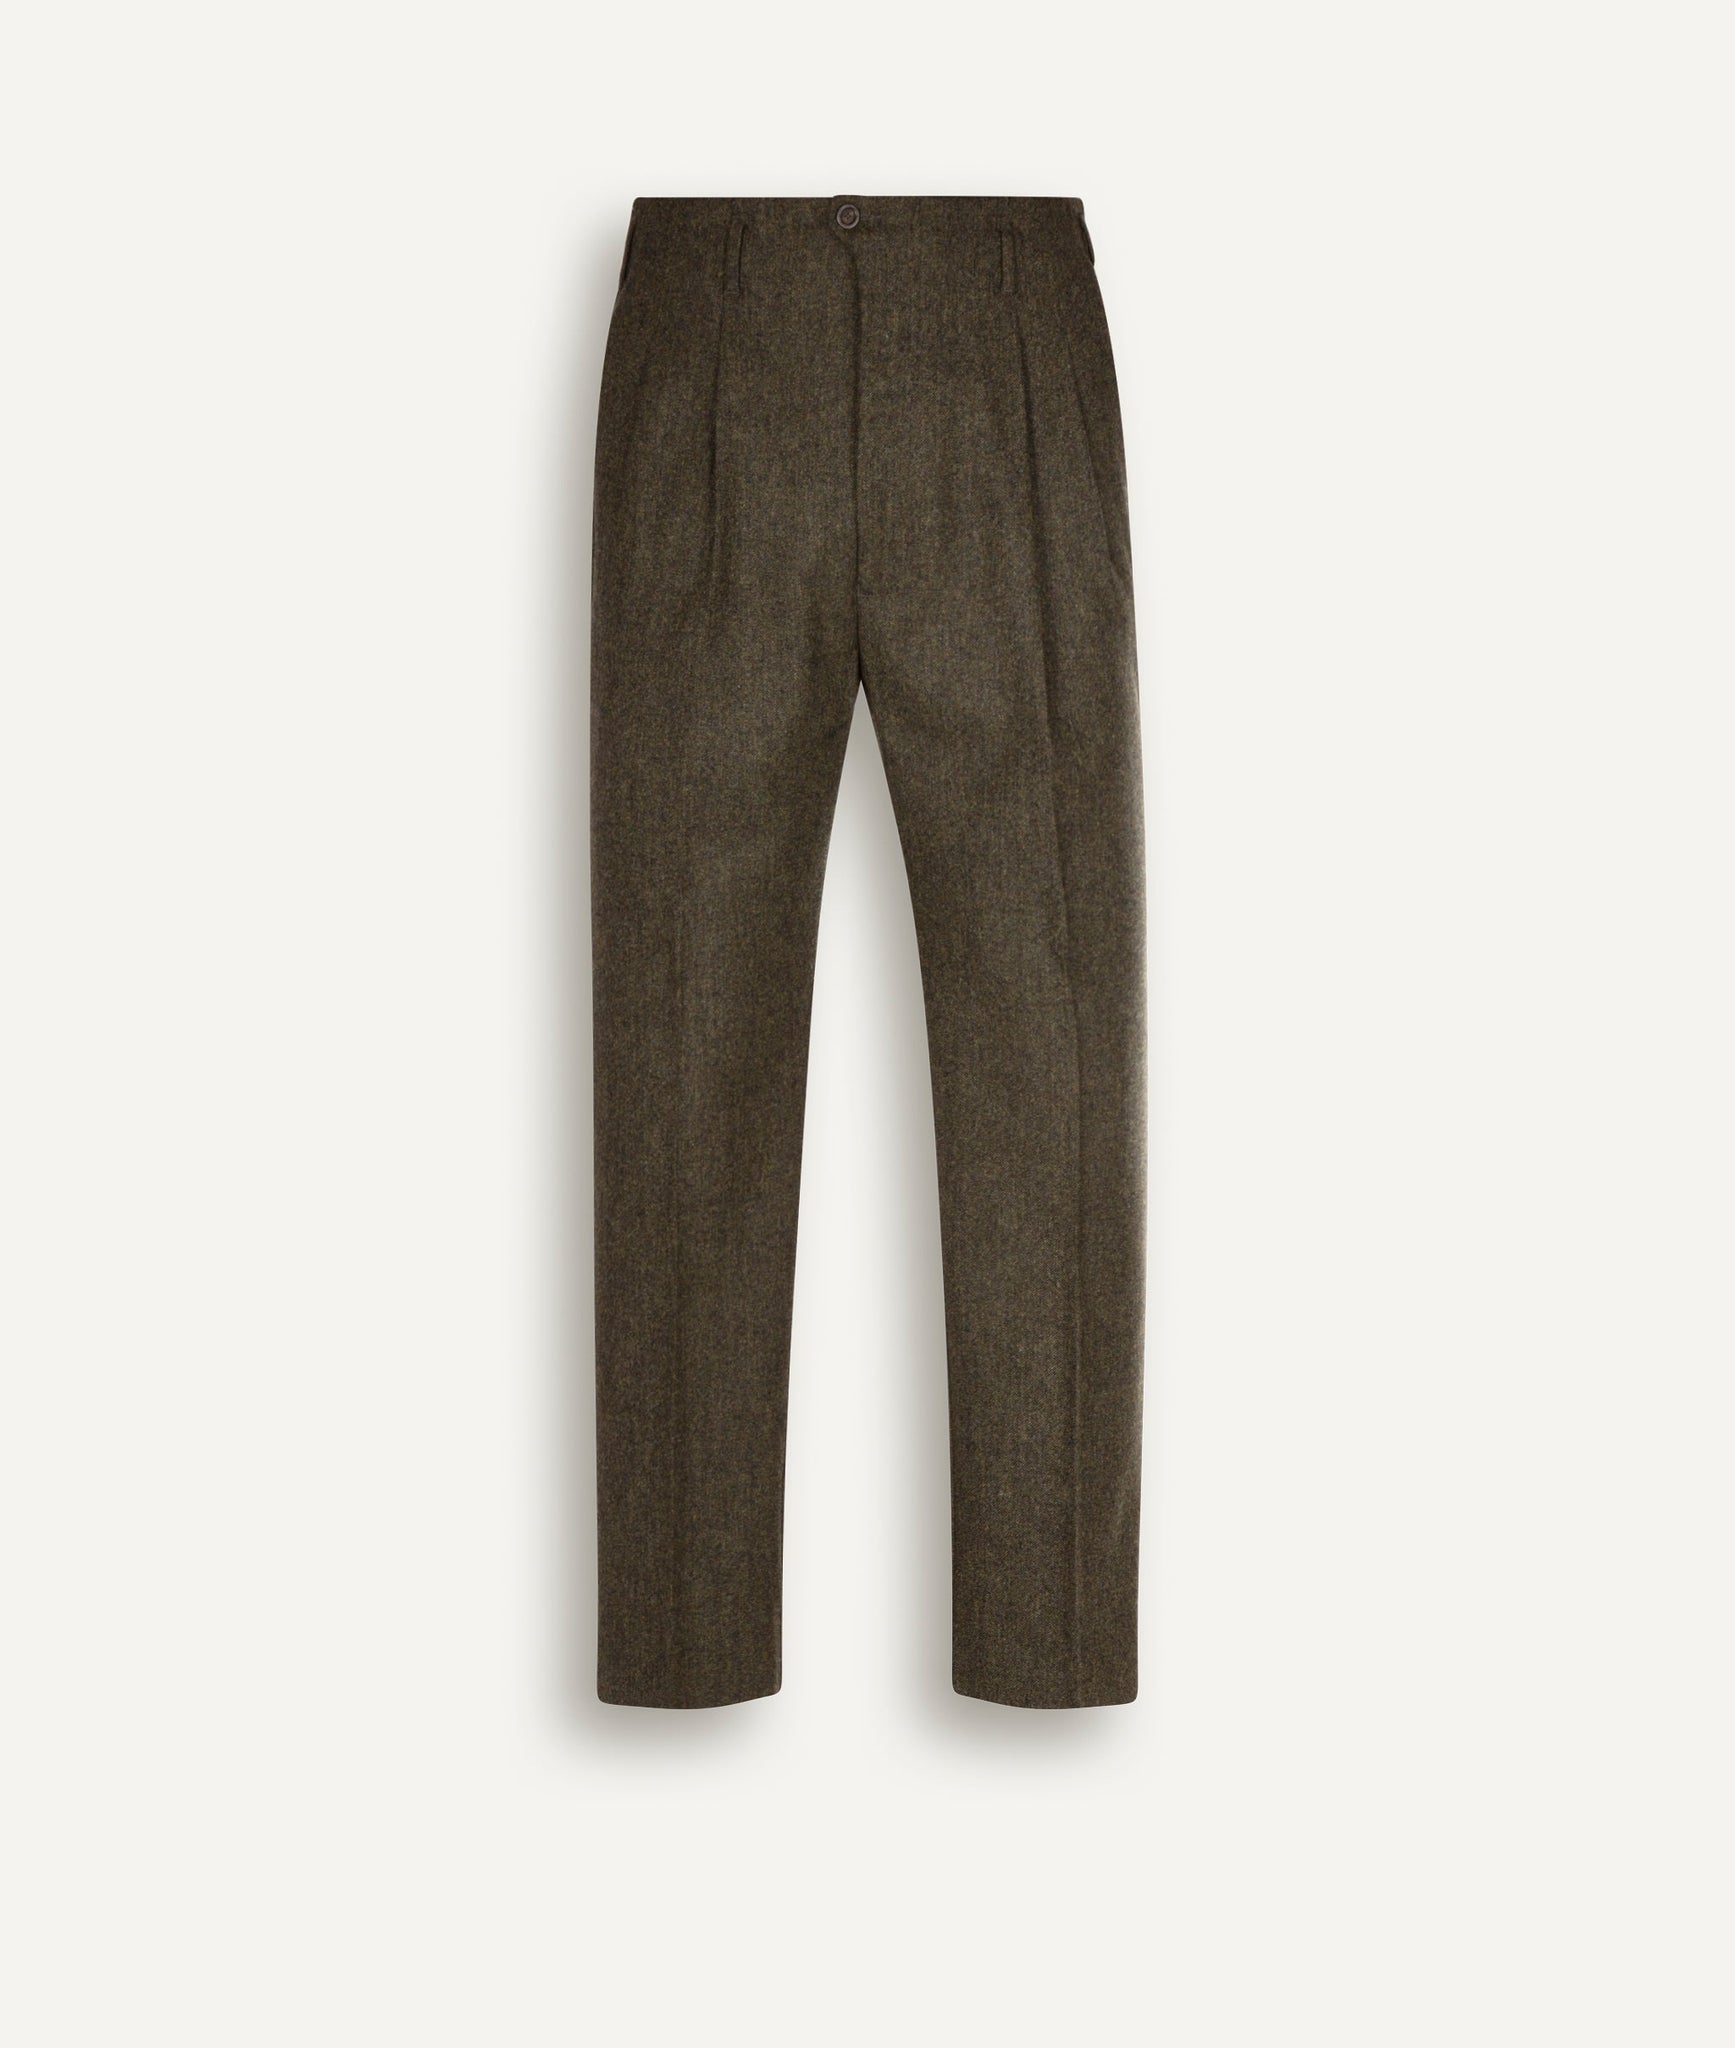 Lardini - Classic Trousers in Wool